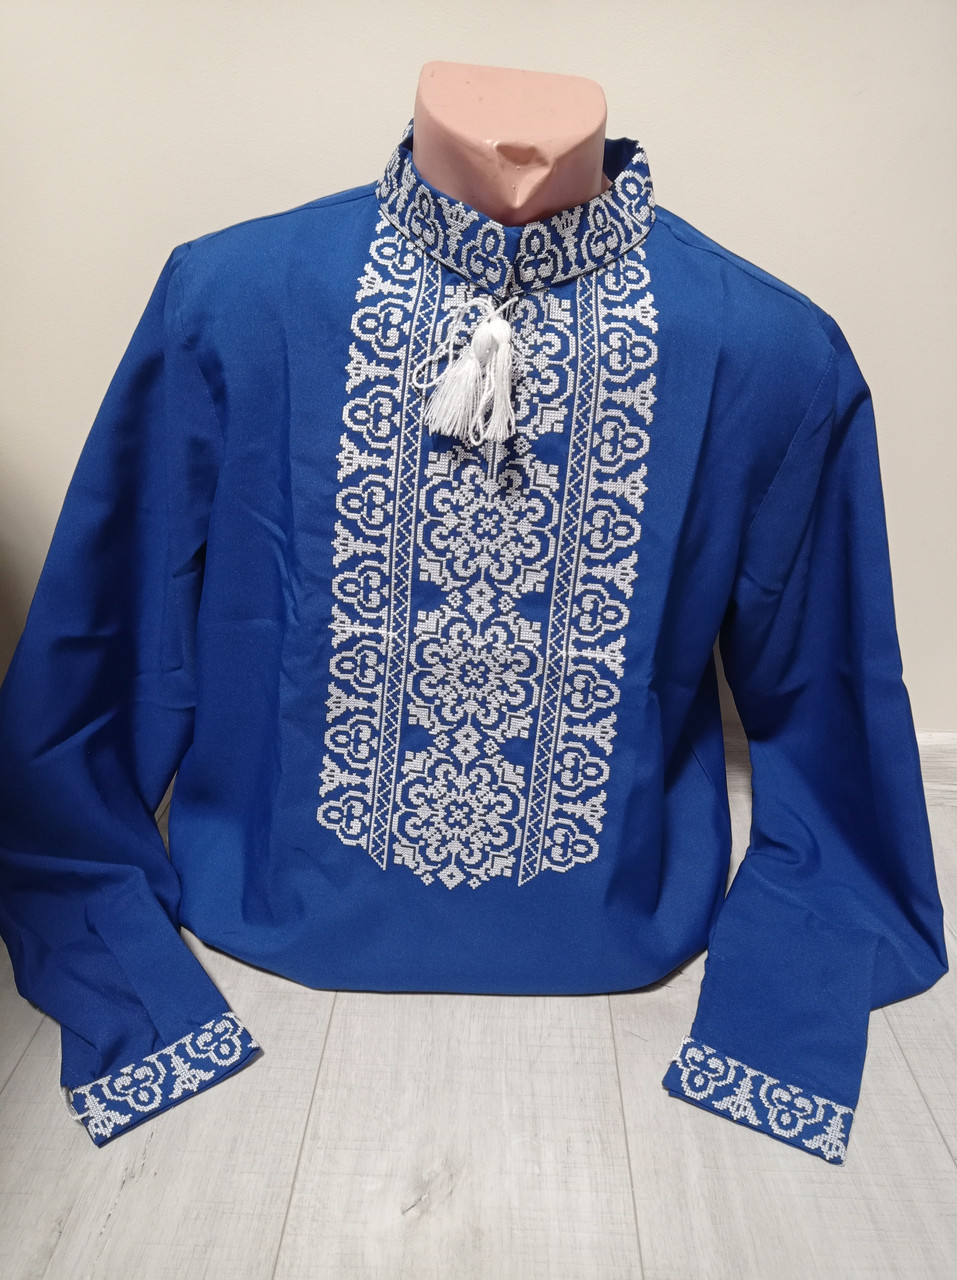 Дизайнерська синя чоловіча вишиванка "Злагода" з вишивкою та довгим рукавом Україна УкраїнаТД 44-64 розміри